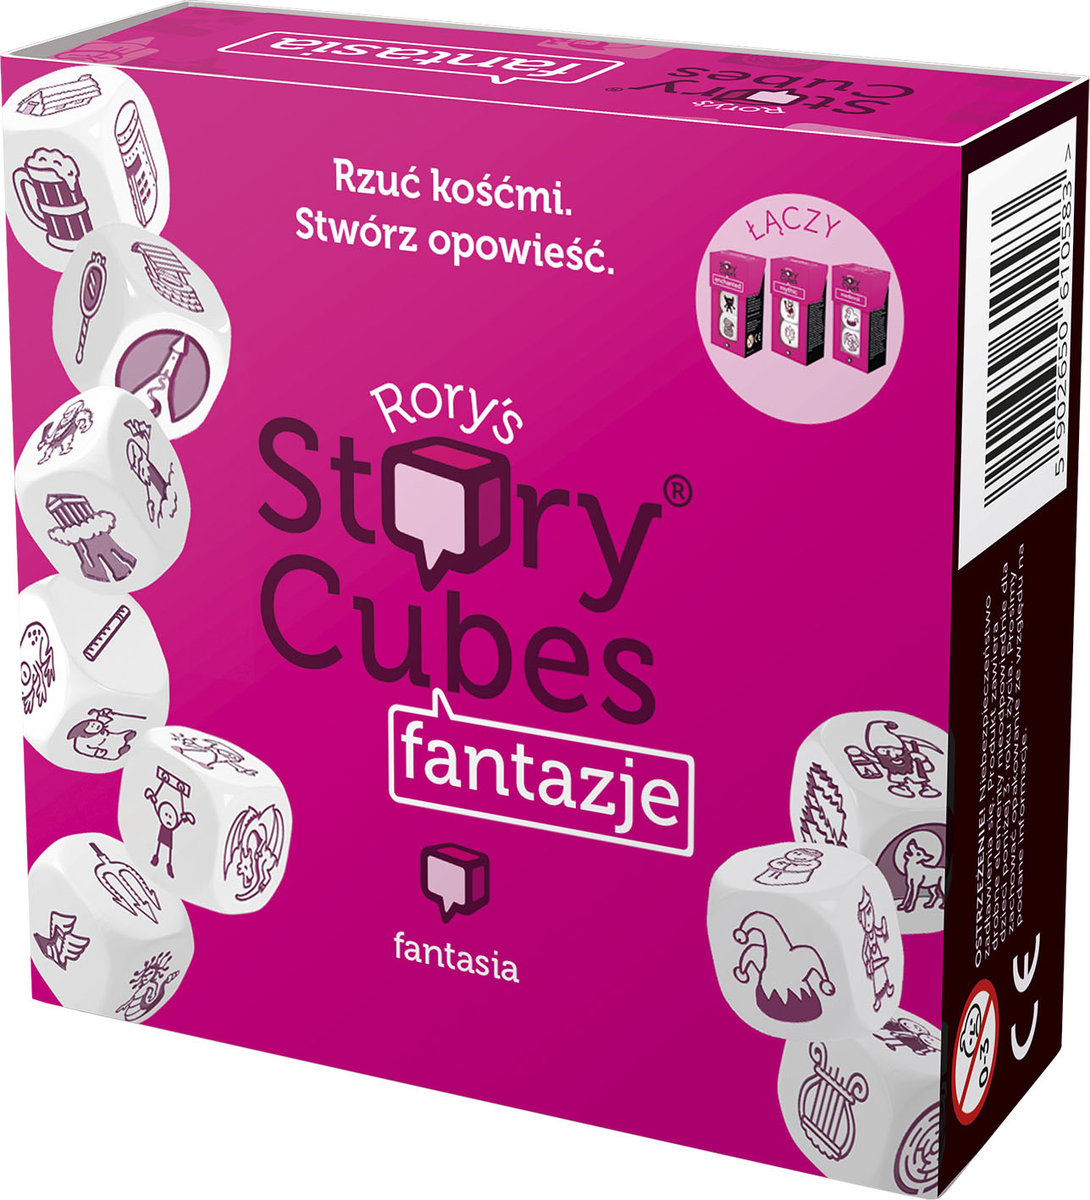 Cube Story Cubes: Fantazje